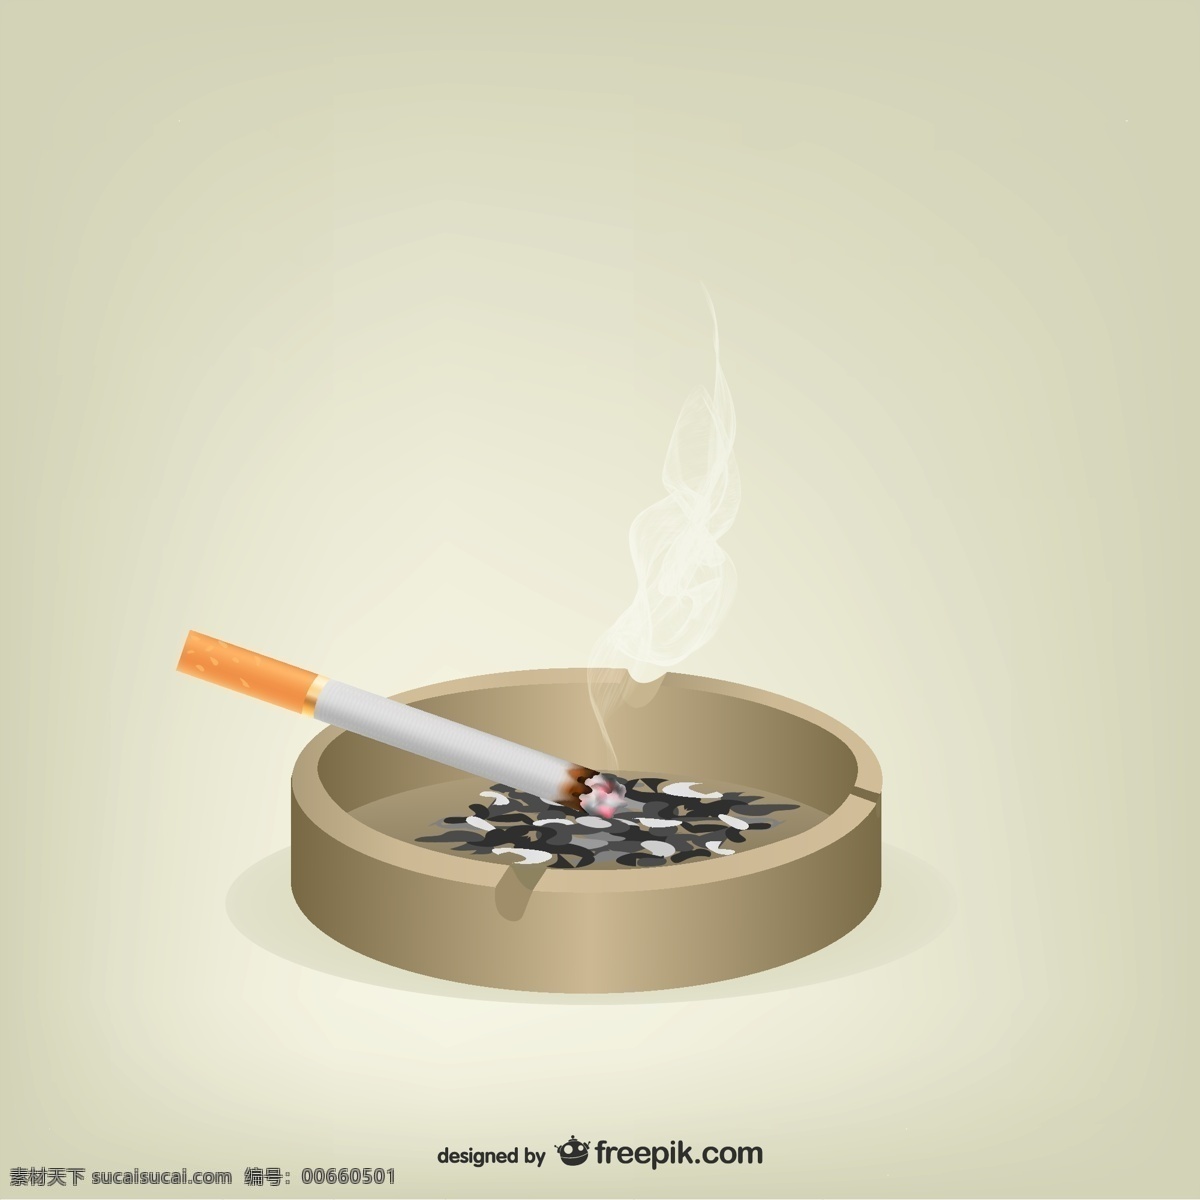 香烟 烟灰缸 载体 图标设计 烟 图形 规律 平面设计 插画 符号 吸烟 蒸汽 形象 概念 雪茄 烟草成瘾 白色